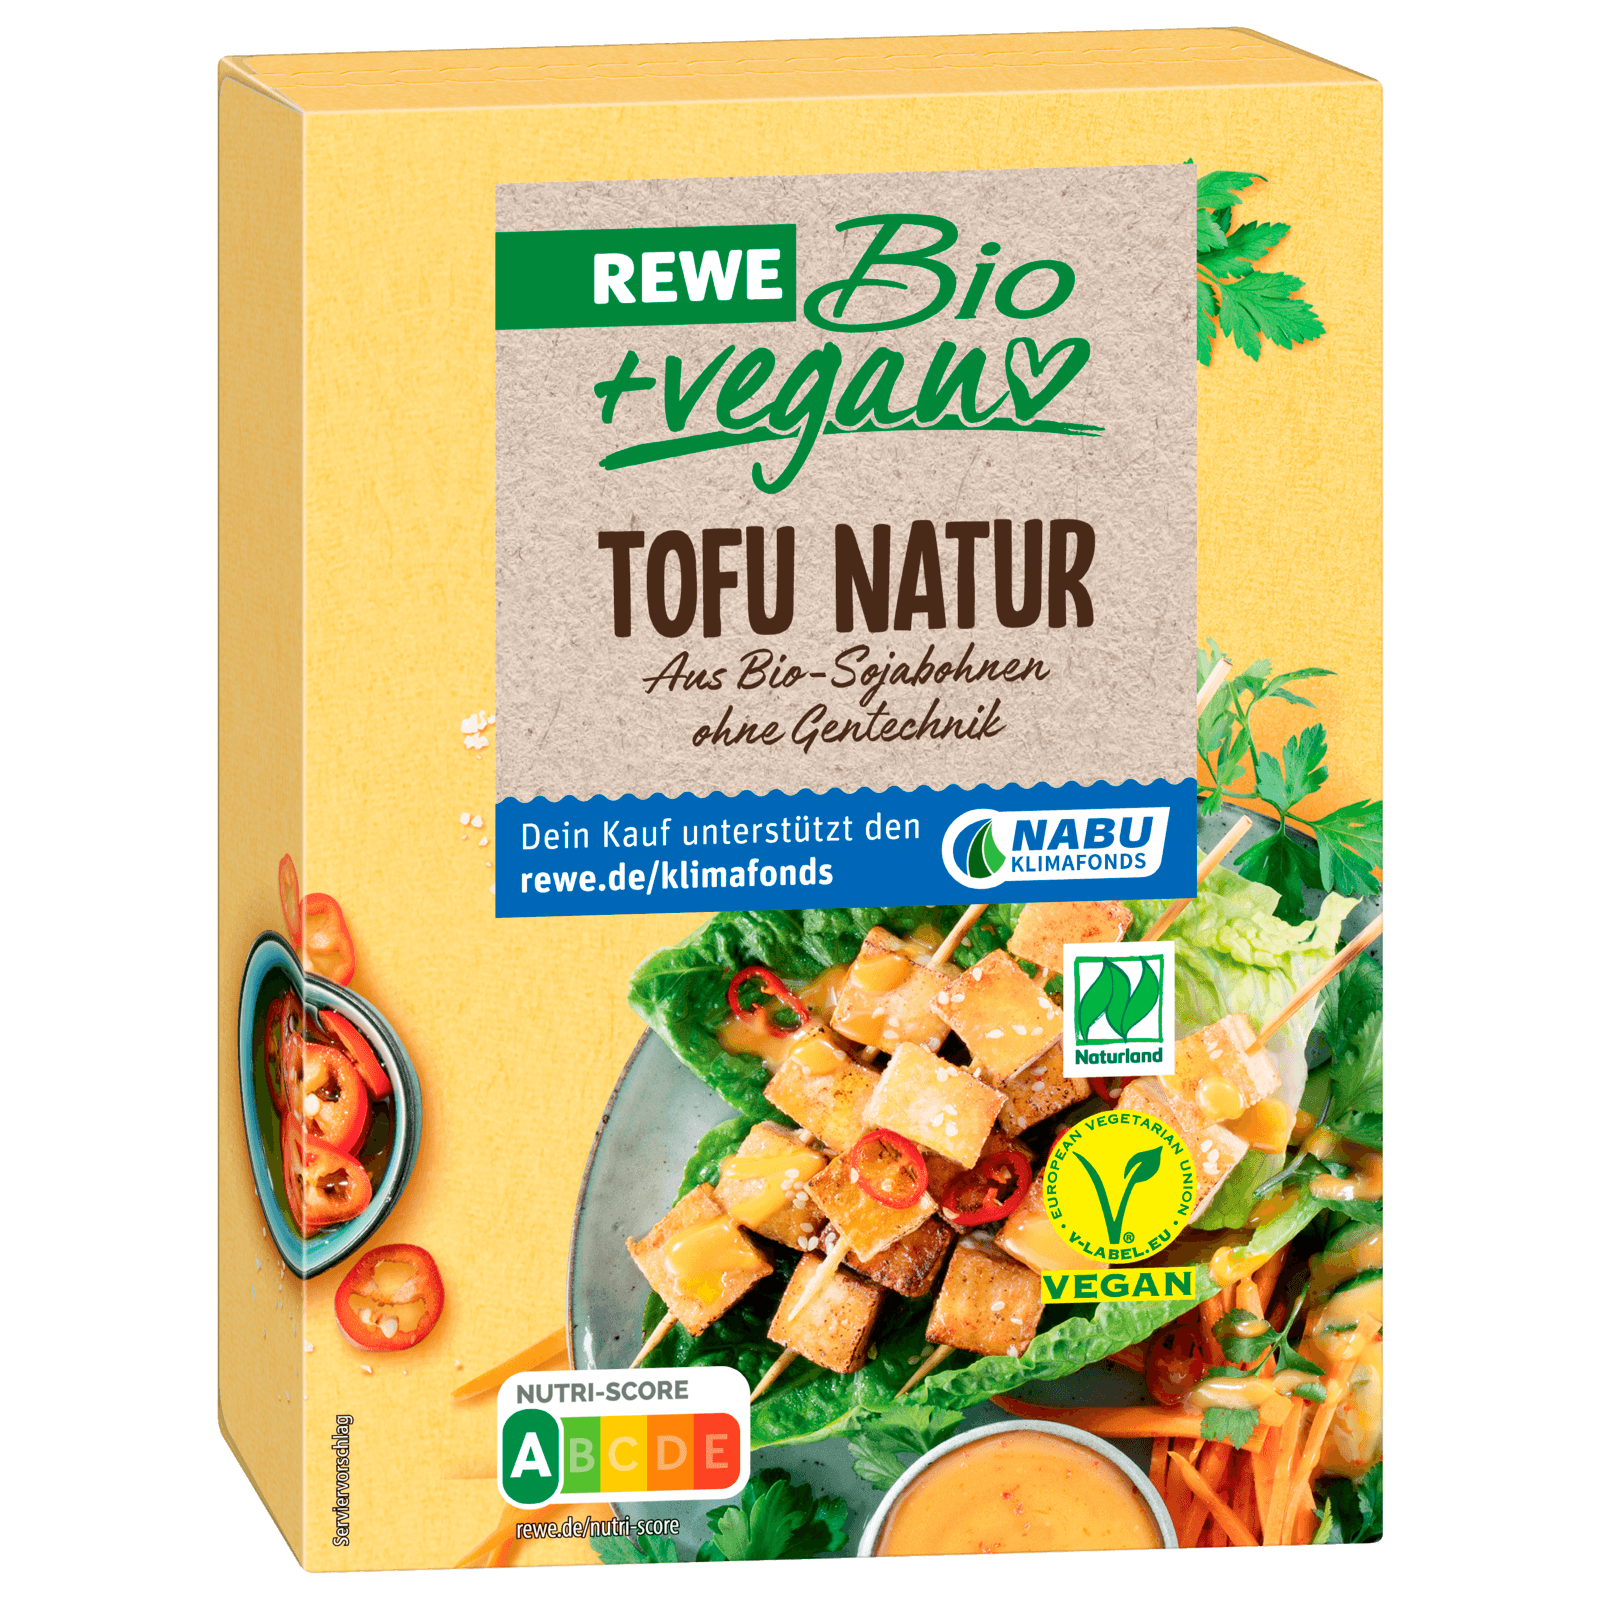 REWE Bio + vegan Tofu Natur 2x200g